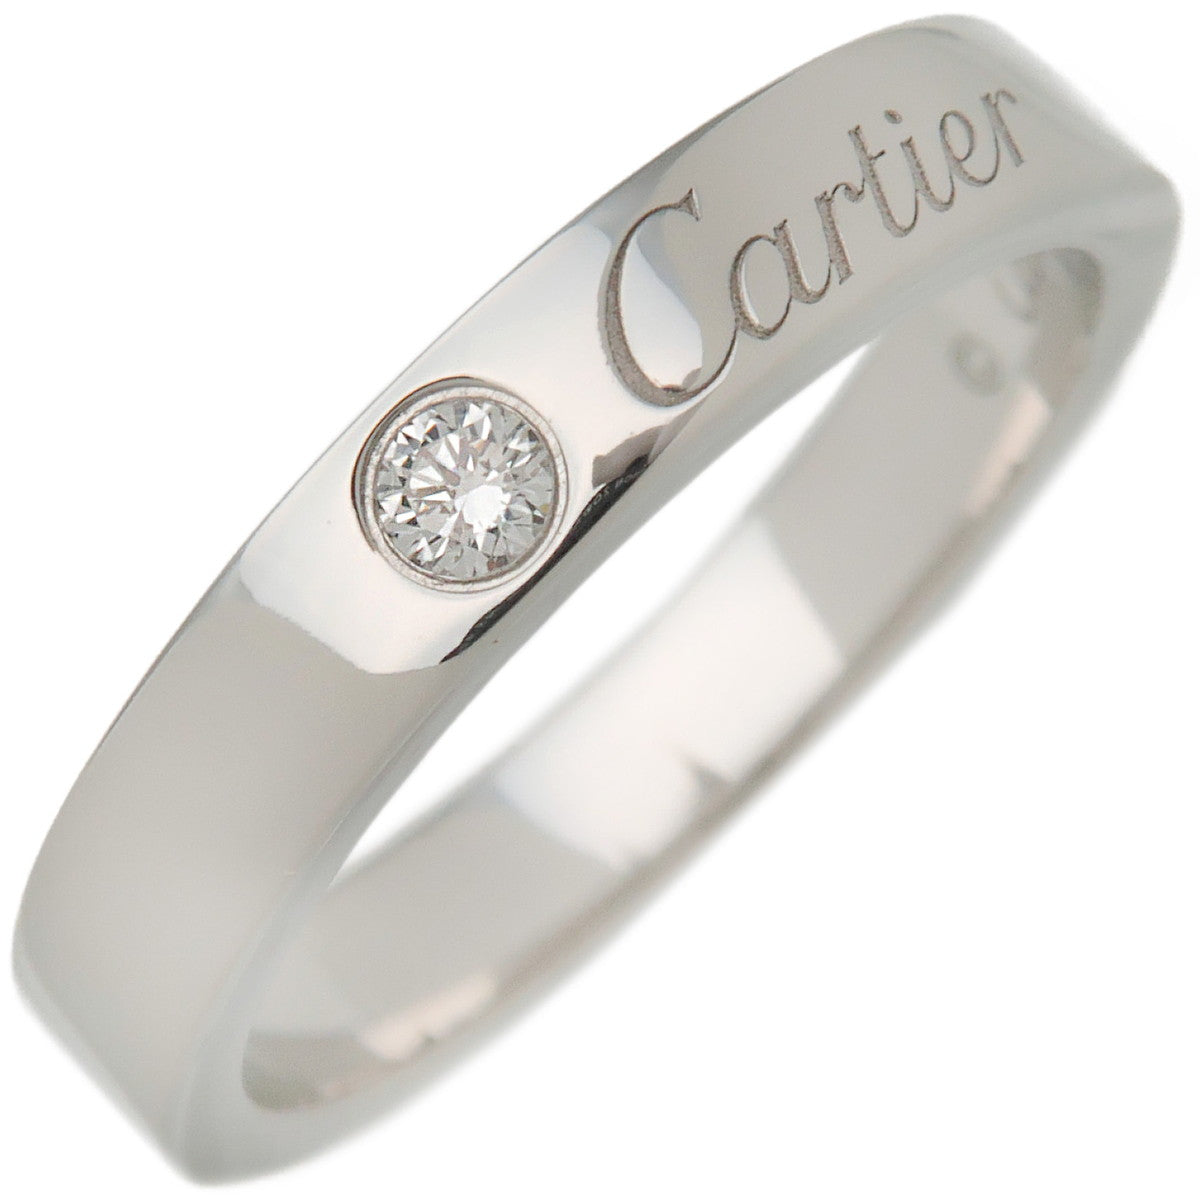 Autentic-Cartier-Engraved-1P-Diamond-Ring-Platinum-#48-US4.5-HK9.5-EU48